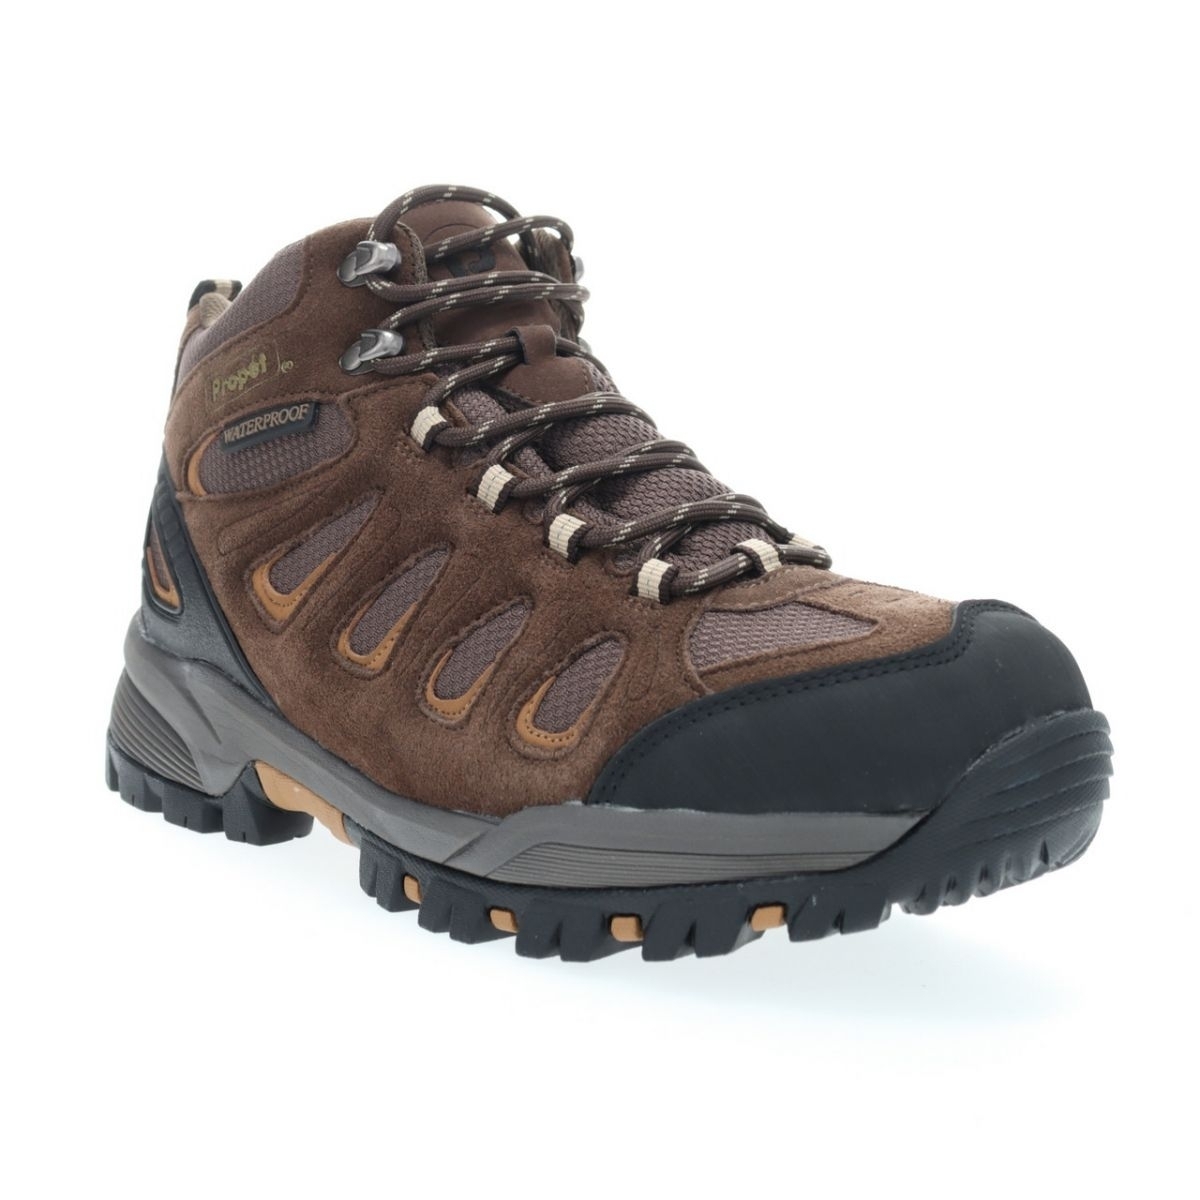 Propet Men's Ridge Walker Hiking Boot Brown - M3599BR 8 XX US Men BROWN - BROWN, 8.5